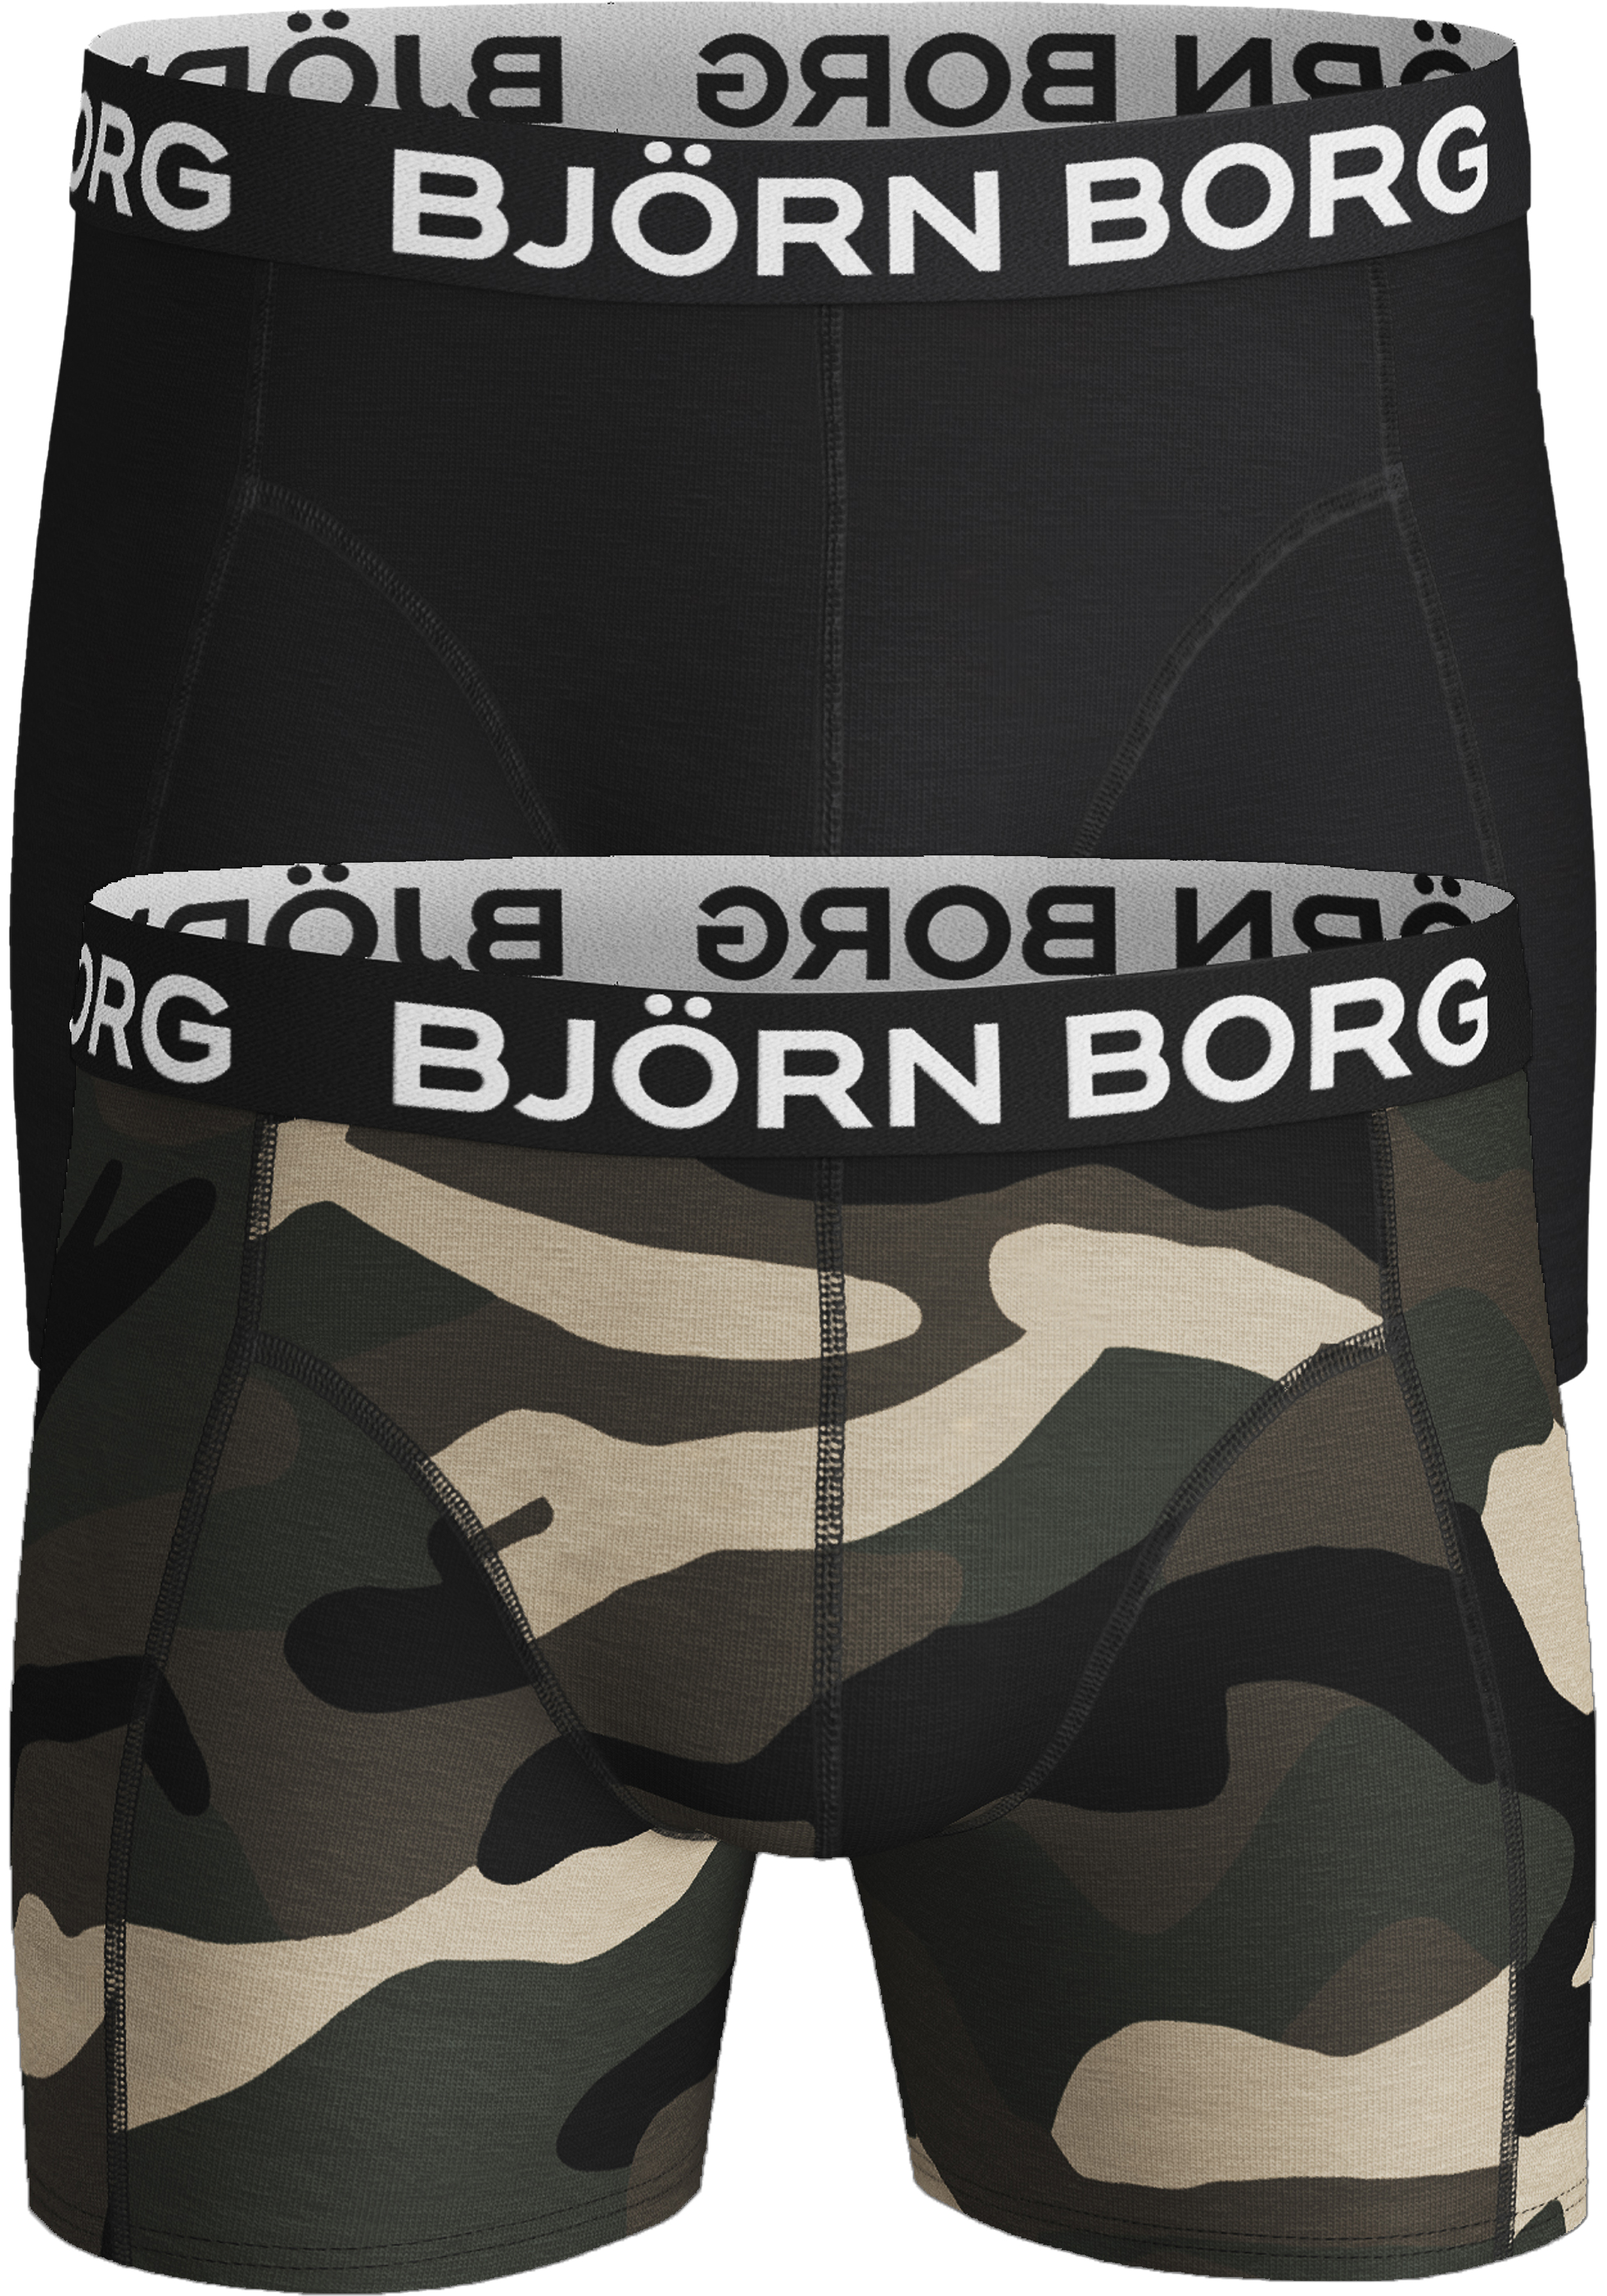 Afleiding site heilige Bjorn Borg boxershorts Core (2-pack), heren boxers normale lengte,... -  Shop de nieuwste voorjaarsmode